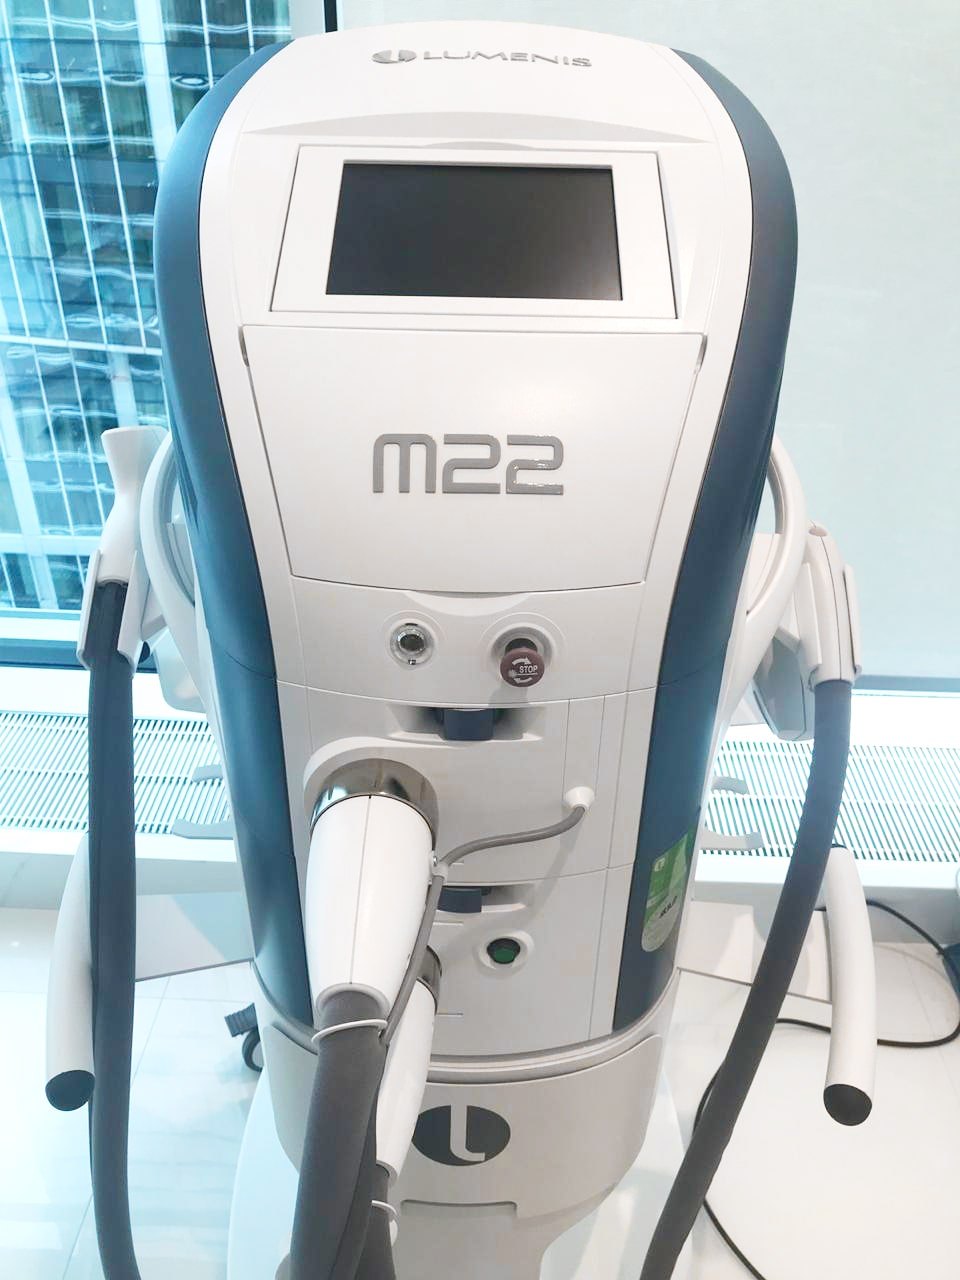 Аппарат лазерный терапевтический M22 Lumenis 2